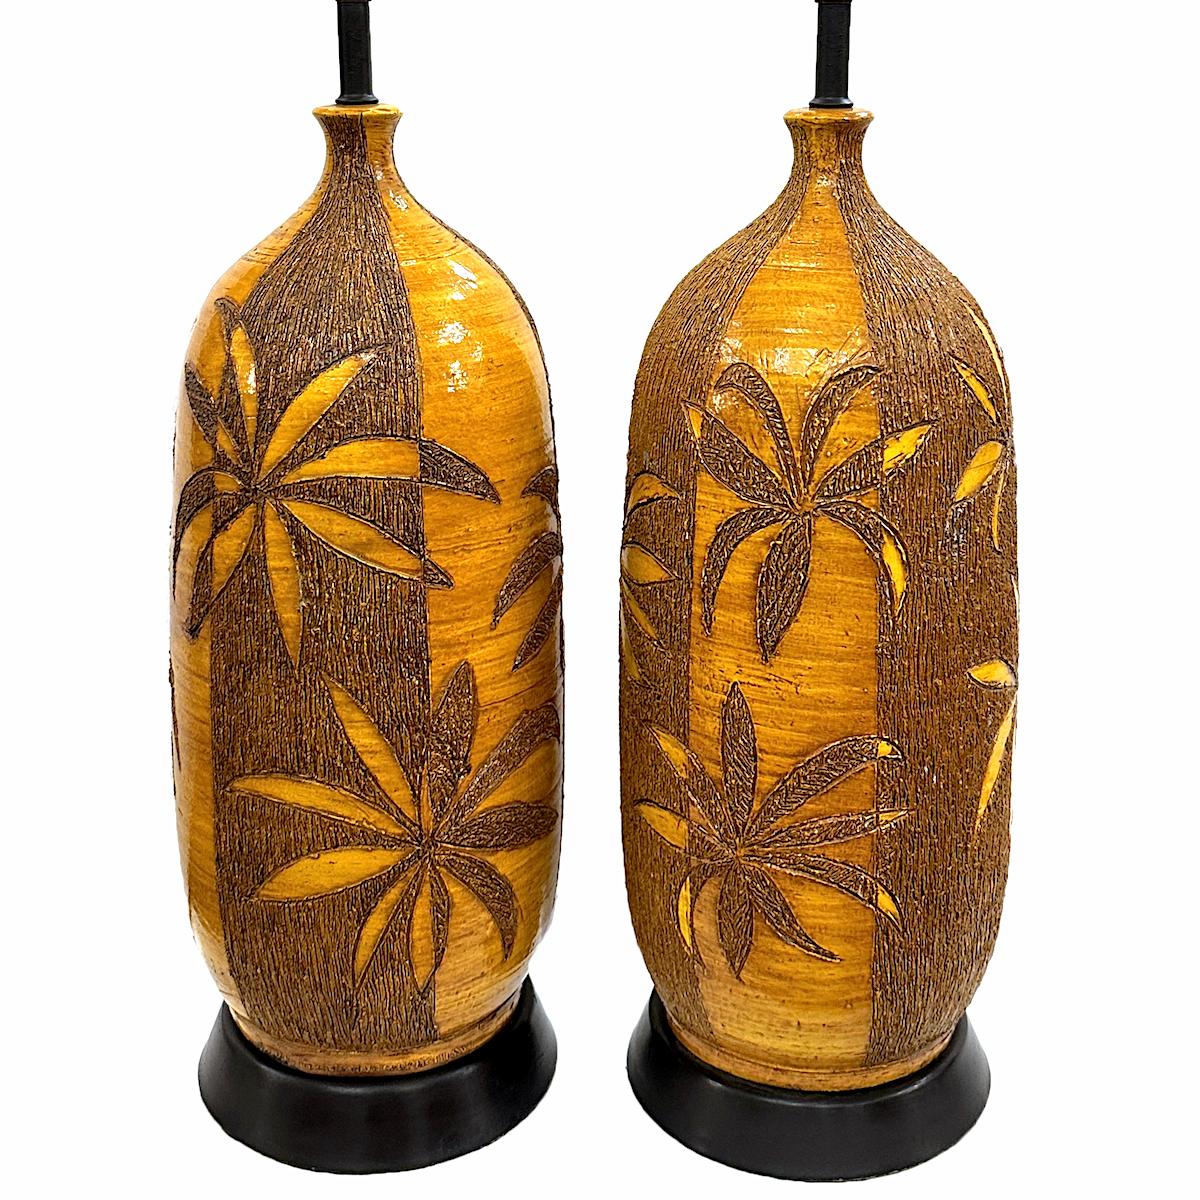 Paire de lampes en céramique italienne des années 1960 avec décoration de palmiers.

Mesures :
Hauteur du corps : 21
Hauteur jusqu'à l'appui de l'abat-jour : 32.5